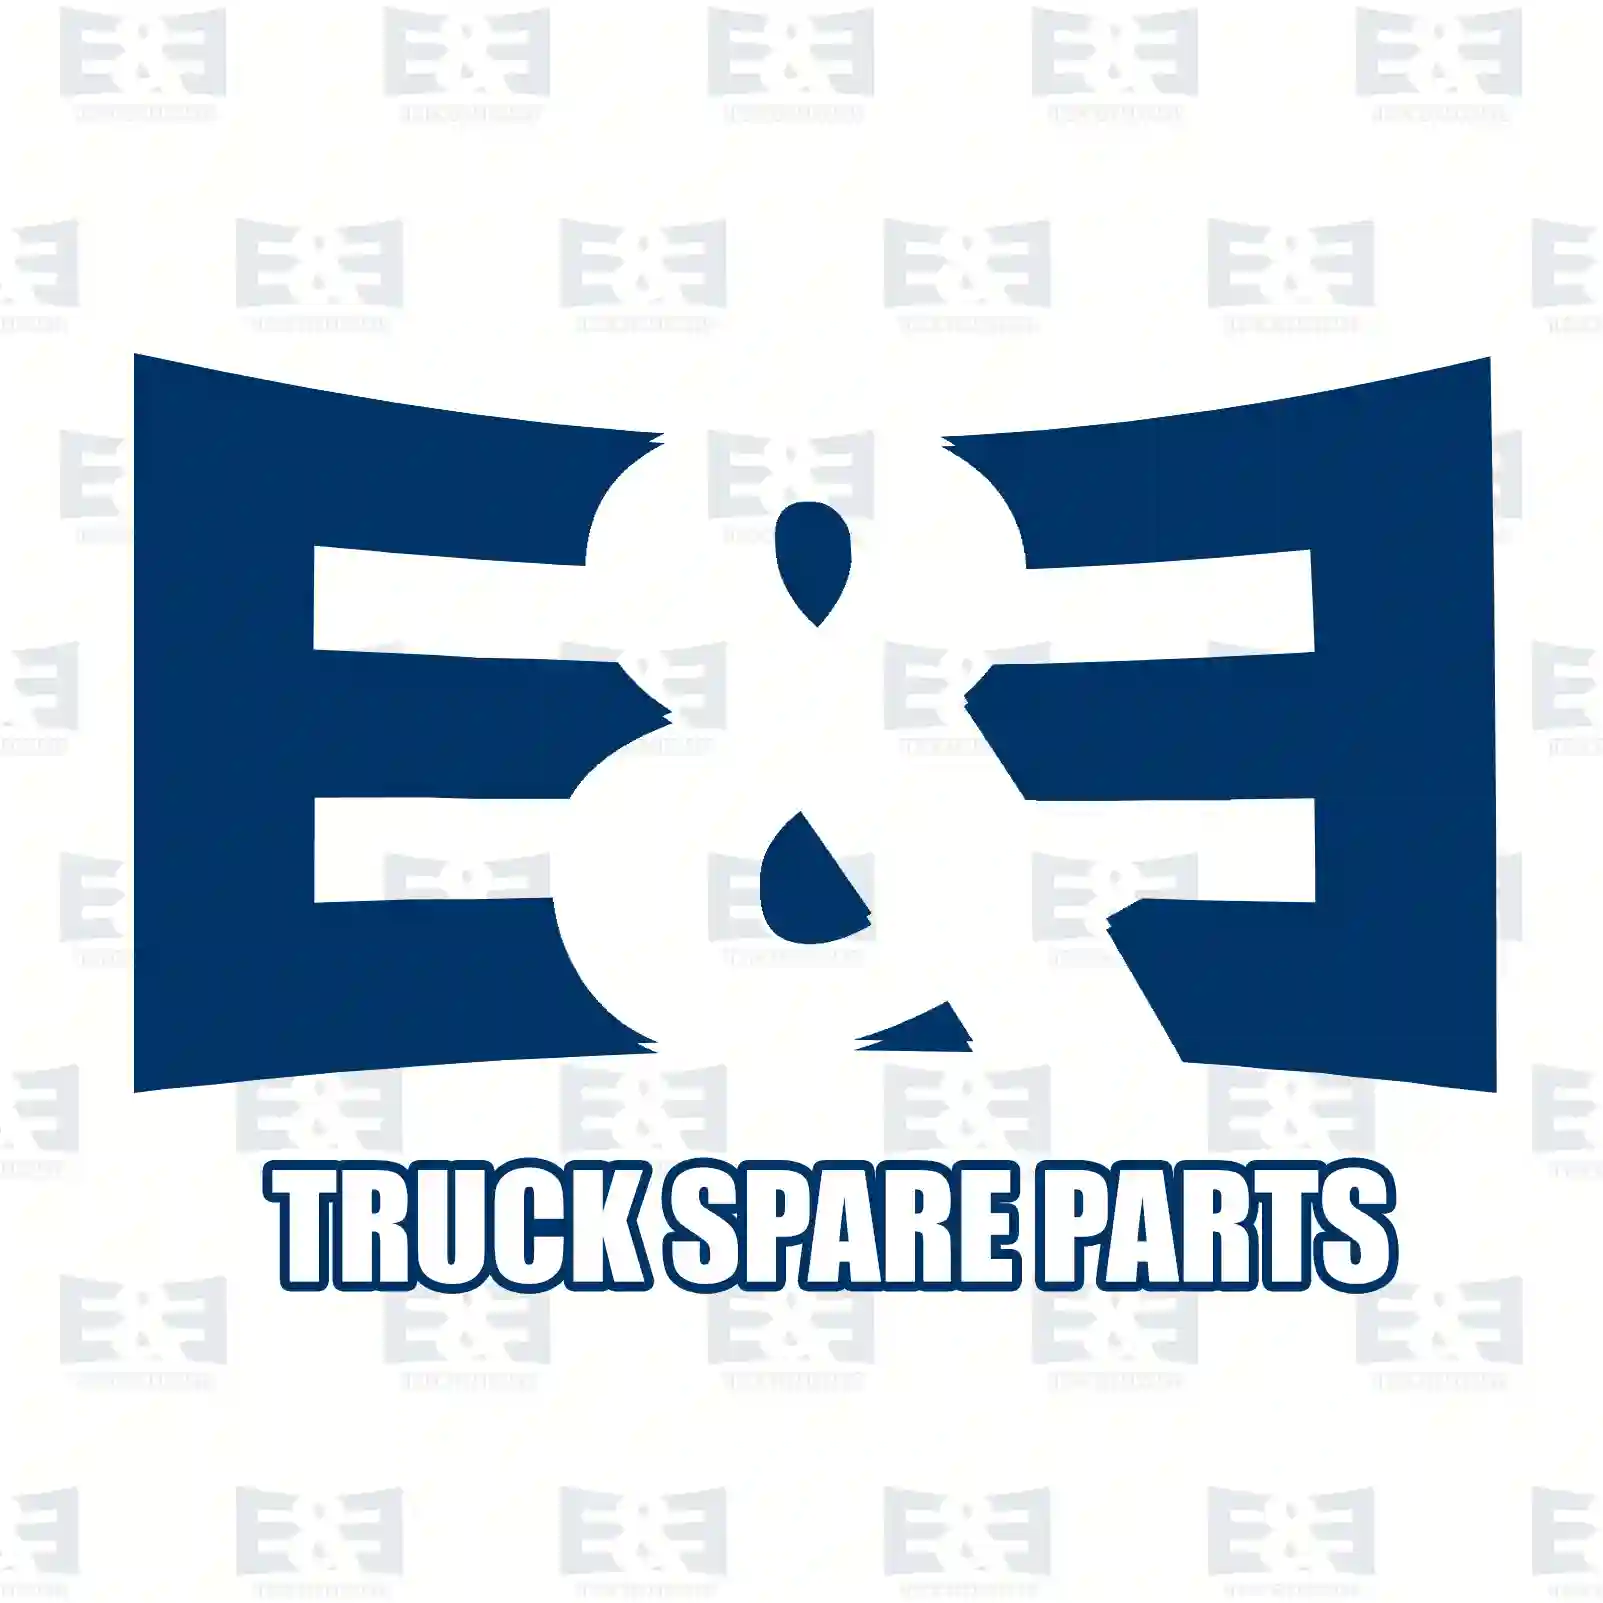 Evaporator, air conditioning, 2E2276572, 1124599, 1318991, 1C1H-19850-AA, 1C1H-19850-AB, 4041976, 4099149, Y1CH-19850-AB, Y1CH-19850-AC, Y1CH-19850-AD, Y1CH-19850-BC ||  2E2276572 E&E Truck Spare Parts | Truck Spare Parts, Auotomotive Spare Parts Evaporator, air conditioning, 2E2276572, 1124599, 1318991, 1C1H-19850-AA, 1C1H-19850-AB, 4041976, 4099149, Y1CH-19850-AB, Y1CH-19850-AC, Y1CH-19850-AD, Y1CH-19850-BC ||  2E2276572 E&E Truck Spare Parts | Truck Spare Parts, Auotomotive Spare Parts